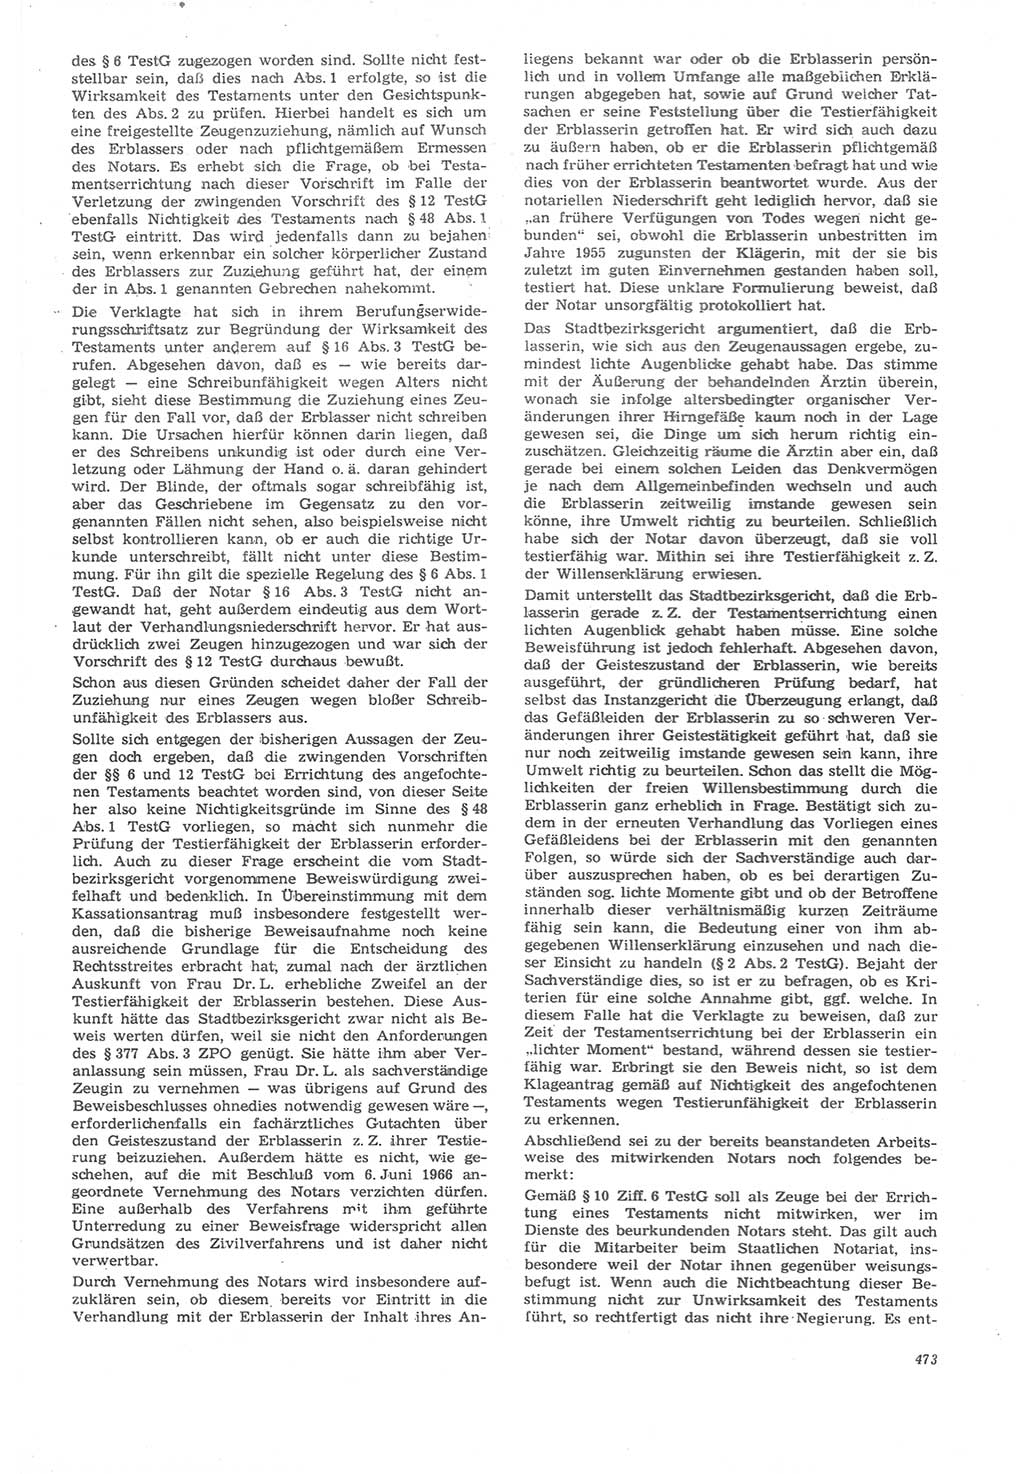 Neue Justiz (NJ), Zeitschrift für Recht und Rechtswissenschaft [Deutsche Demokratische Republik (DDR)], 22. Jahrgang 1968, Seite 473 (NJ DDR 1968, S. 473)